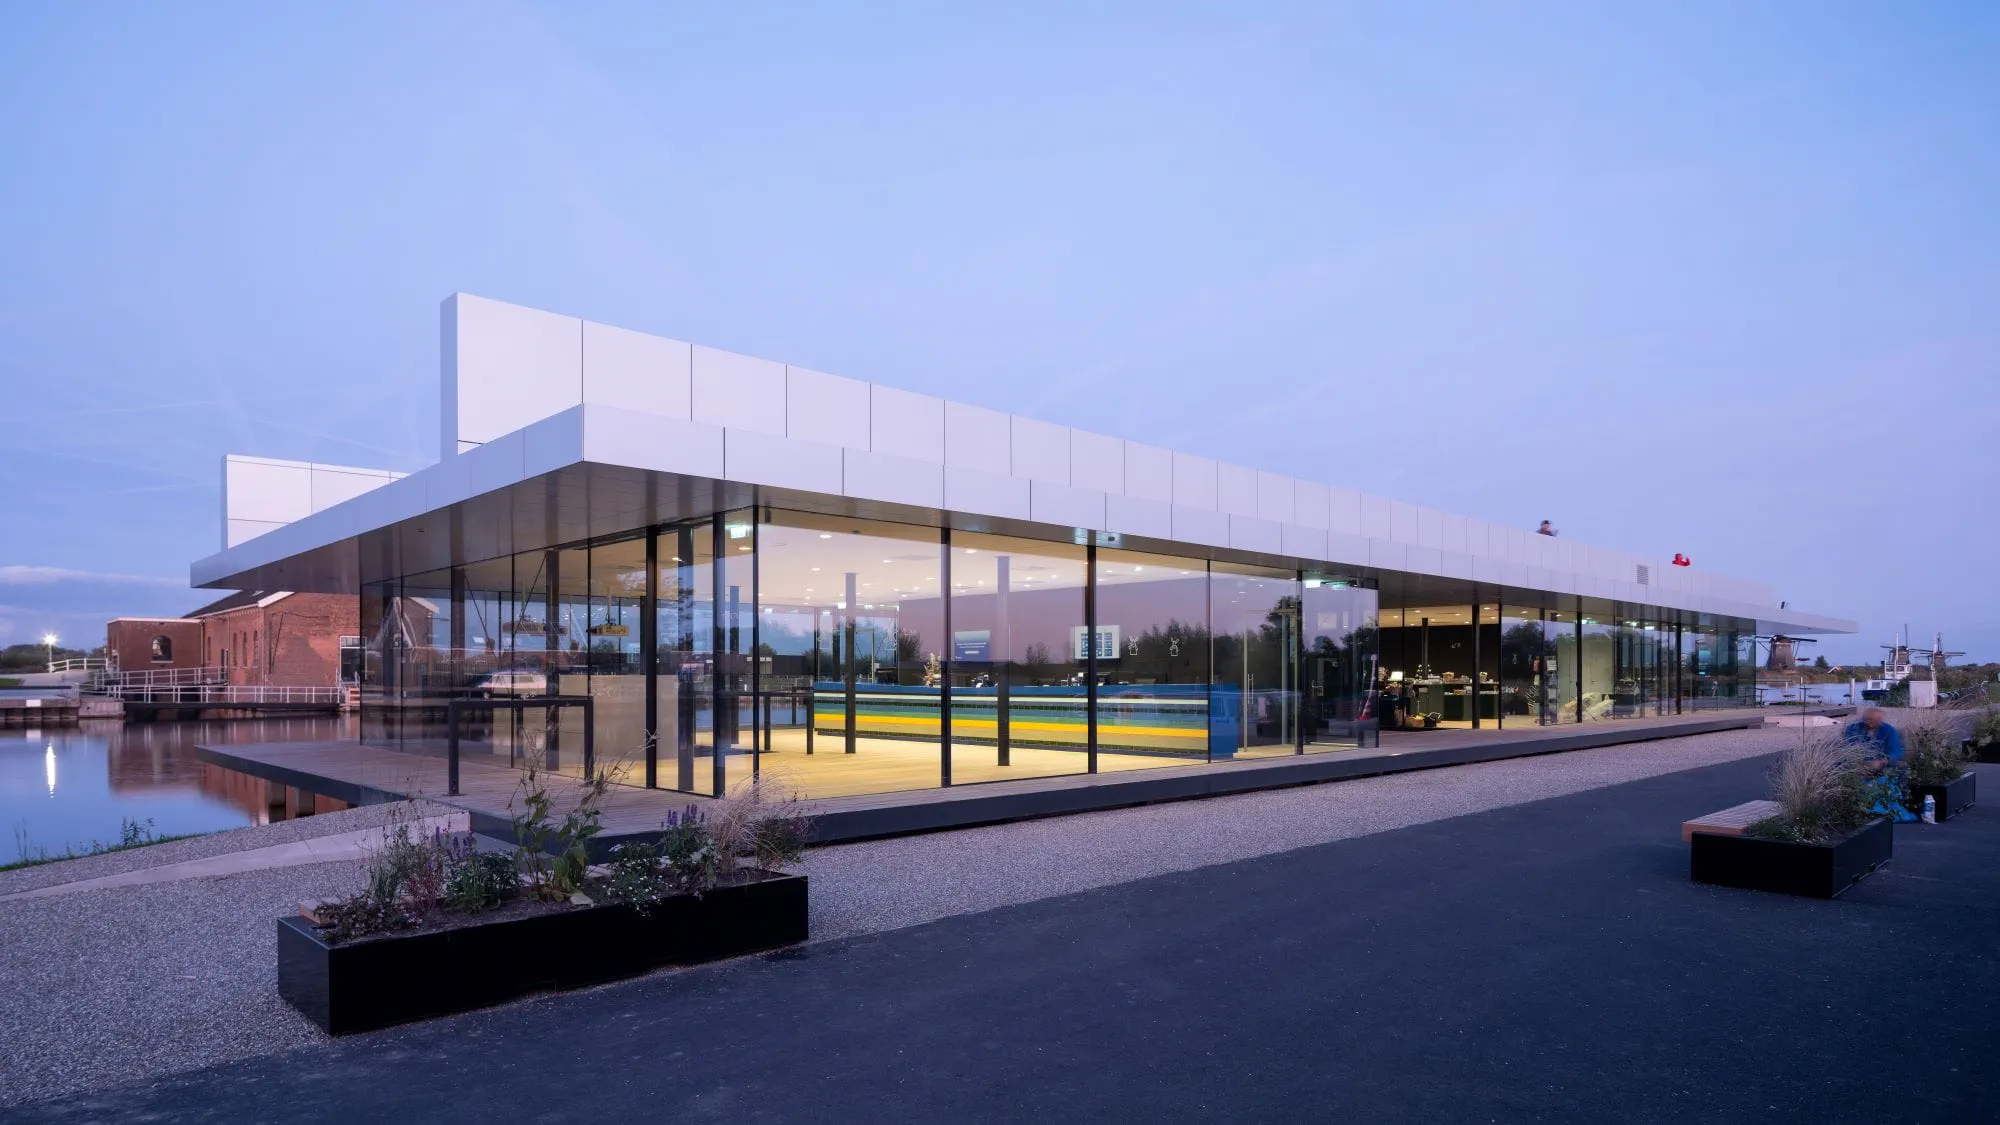 Kinderdijk's new visitor centre designed by Arup